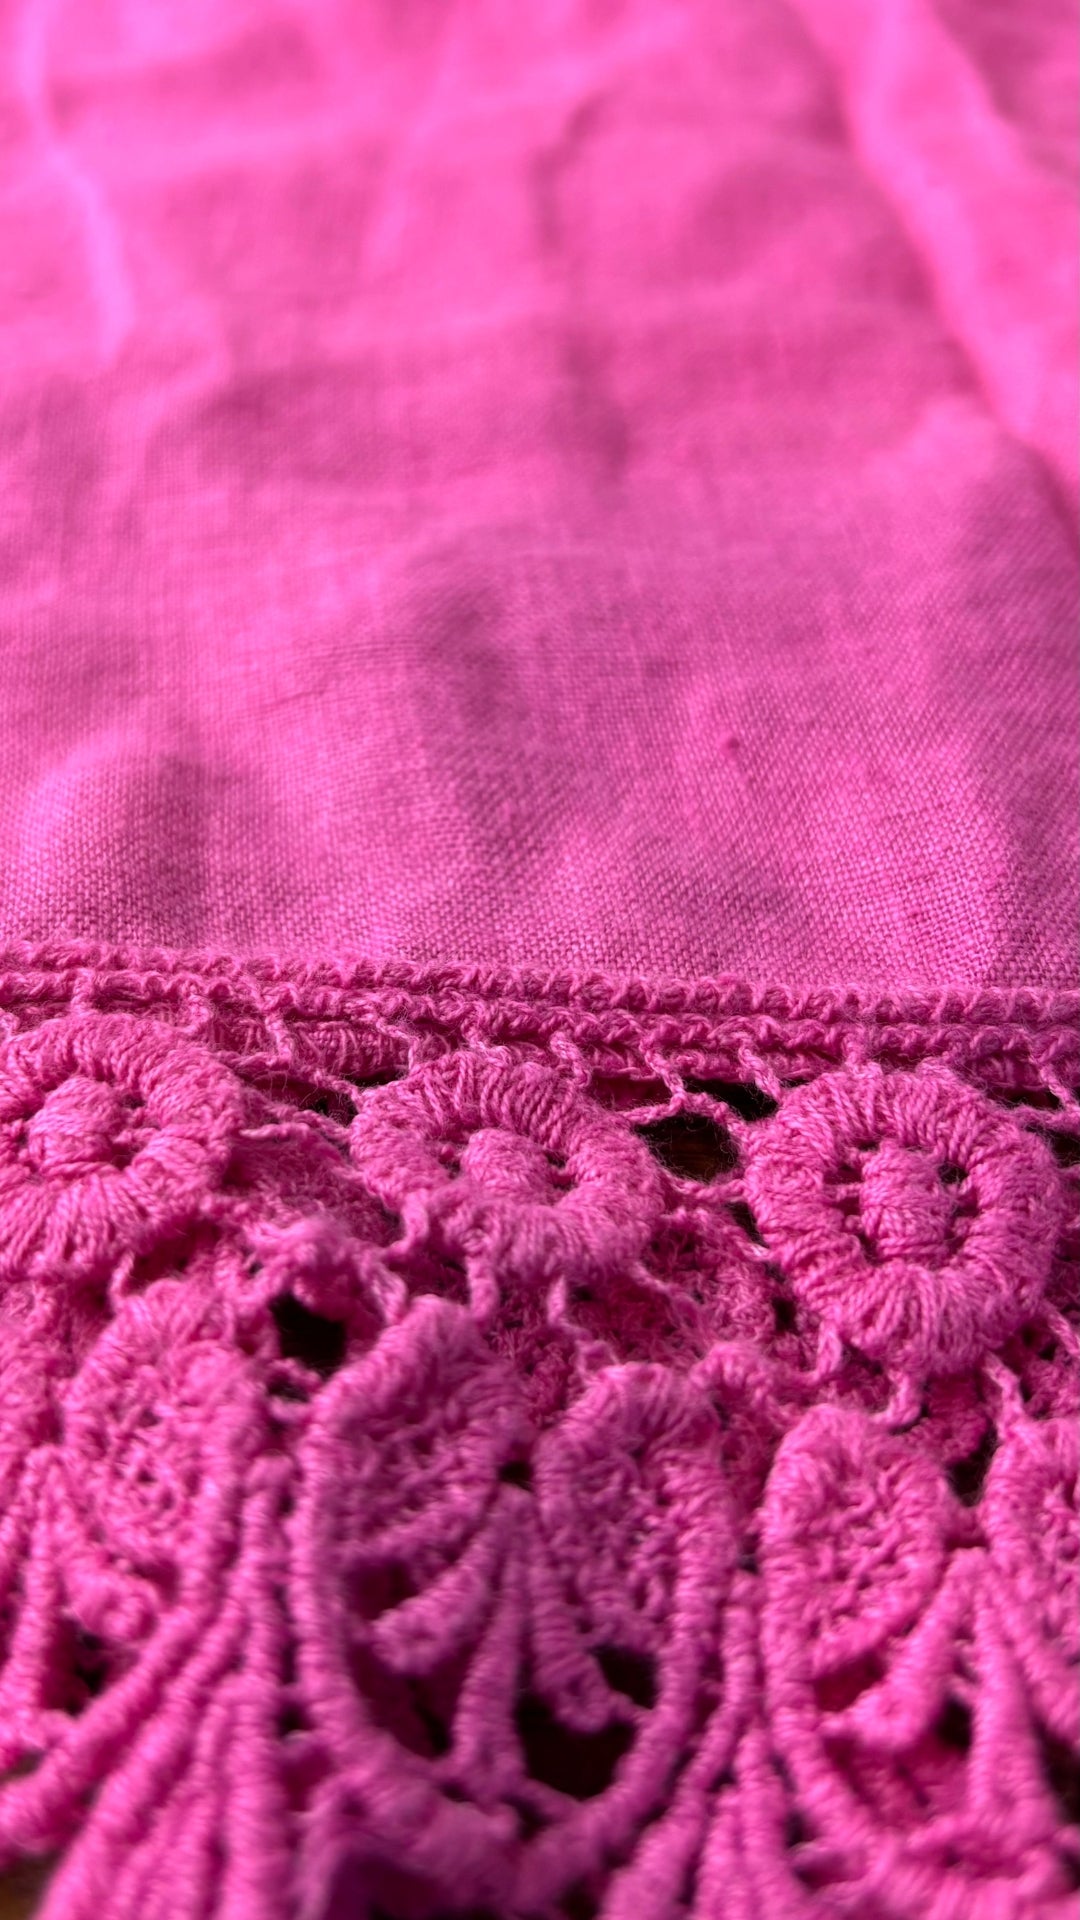 Camisole en lin rose avec ourlet en dentelle Terzo Millennio, taille large. Vue de près du tissu.